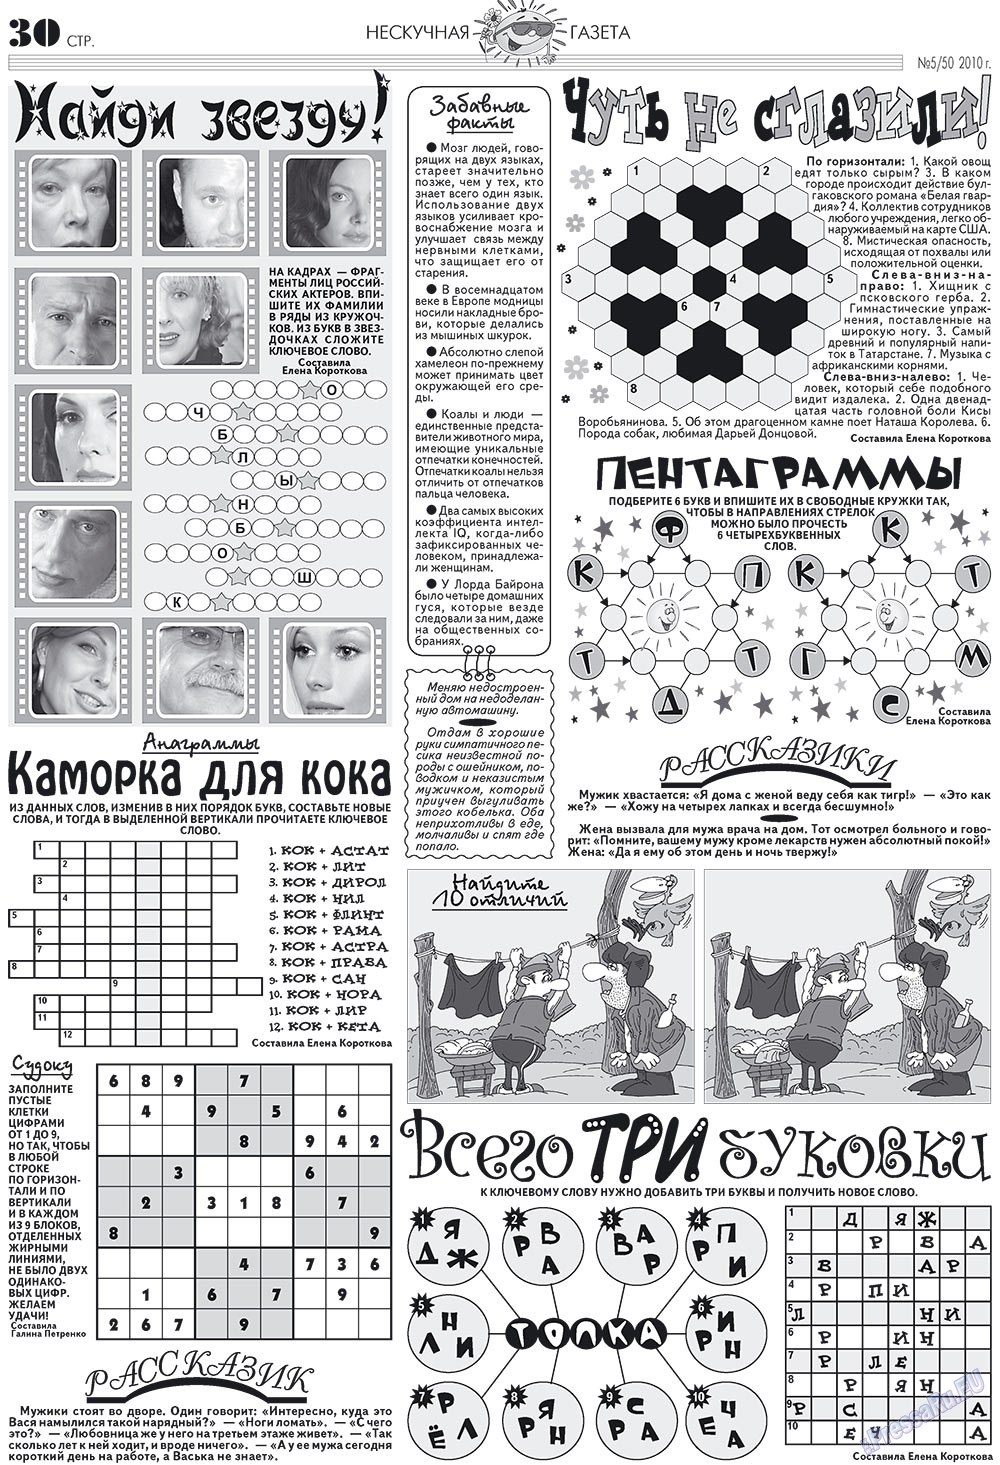 Нескучная газета, журнал. 2010 №5 стр.26